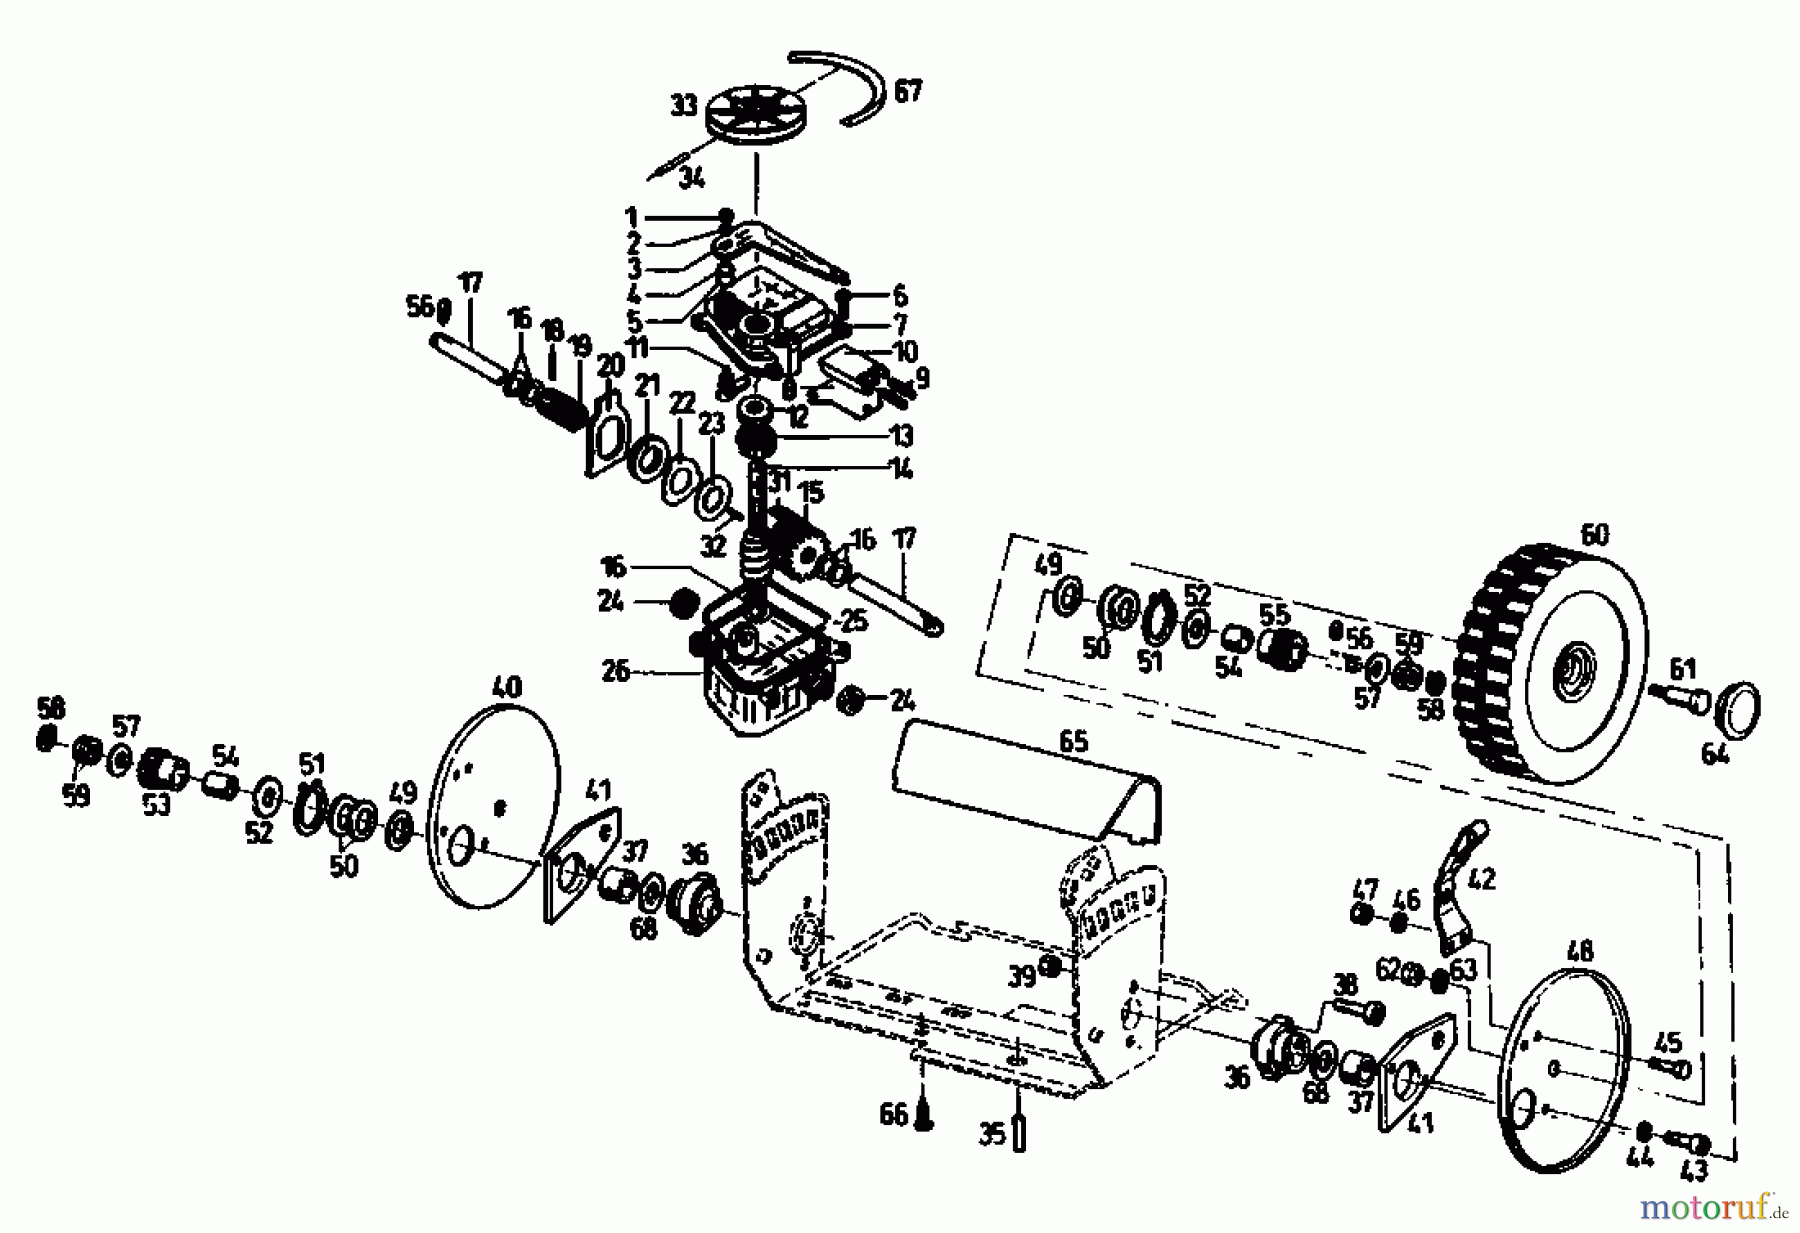  Gutbrod Petrol mower self propelled TURBO HBSR 04011.03  (1992) Gearbox